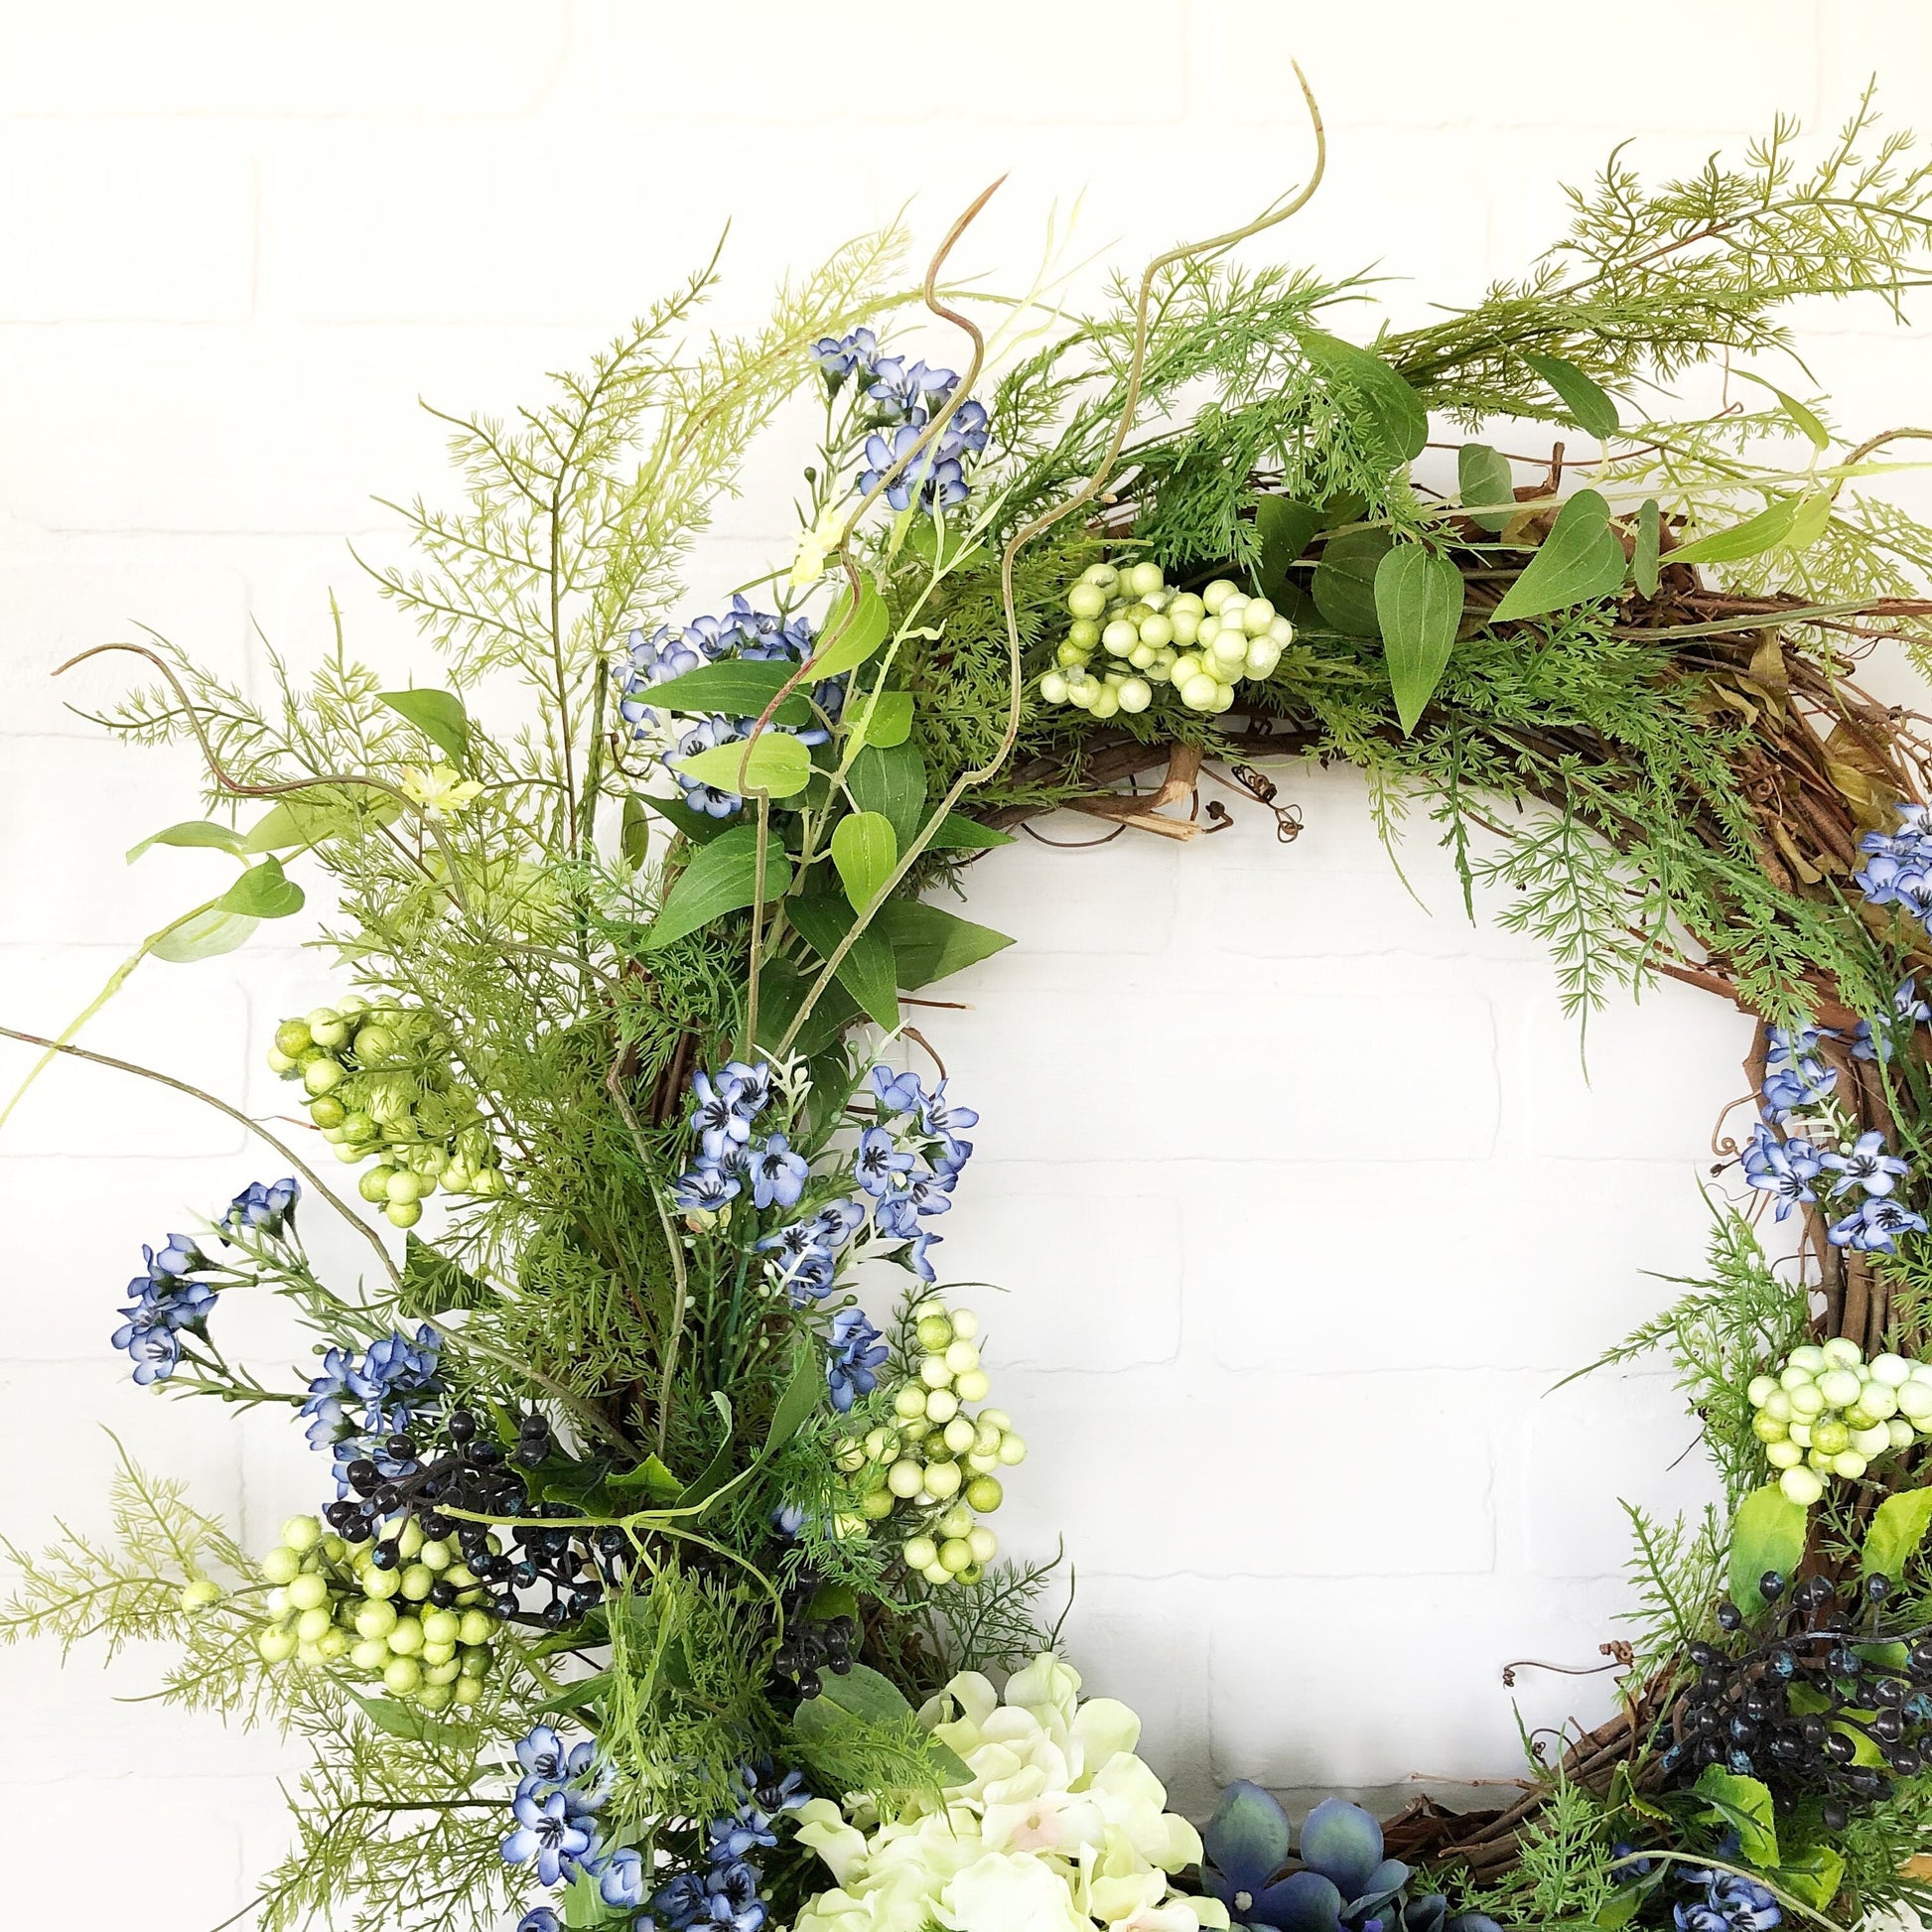 Summer Wreaths for Front Door, Blue and Green Hydrangea Spring and Summer Wreath, Spring Wreath for Front Door,